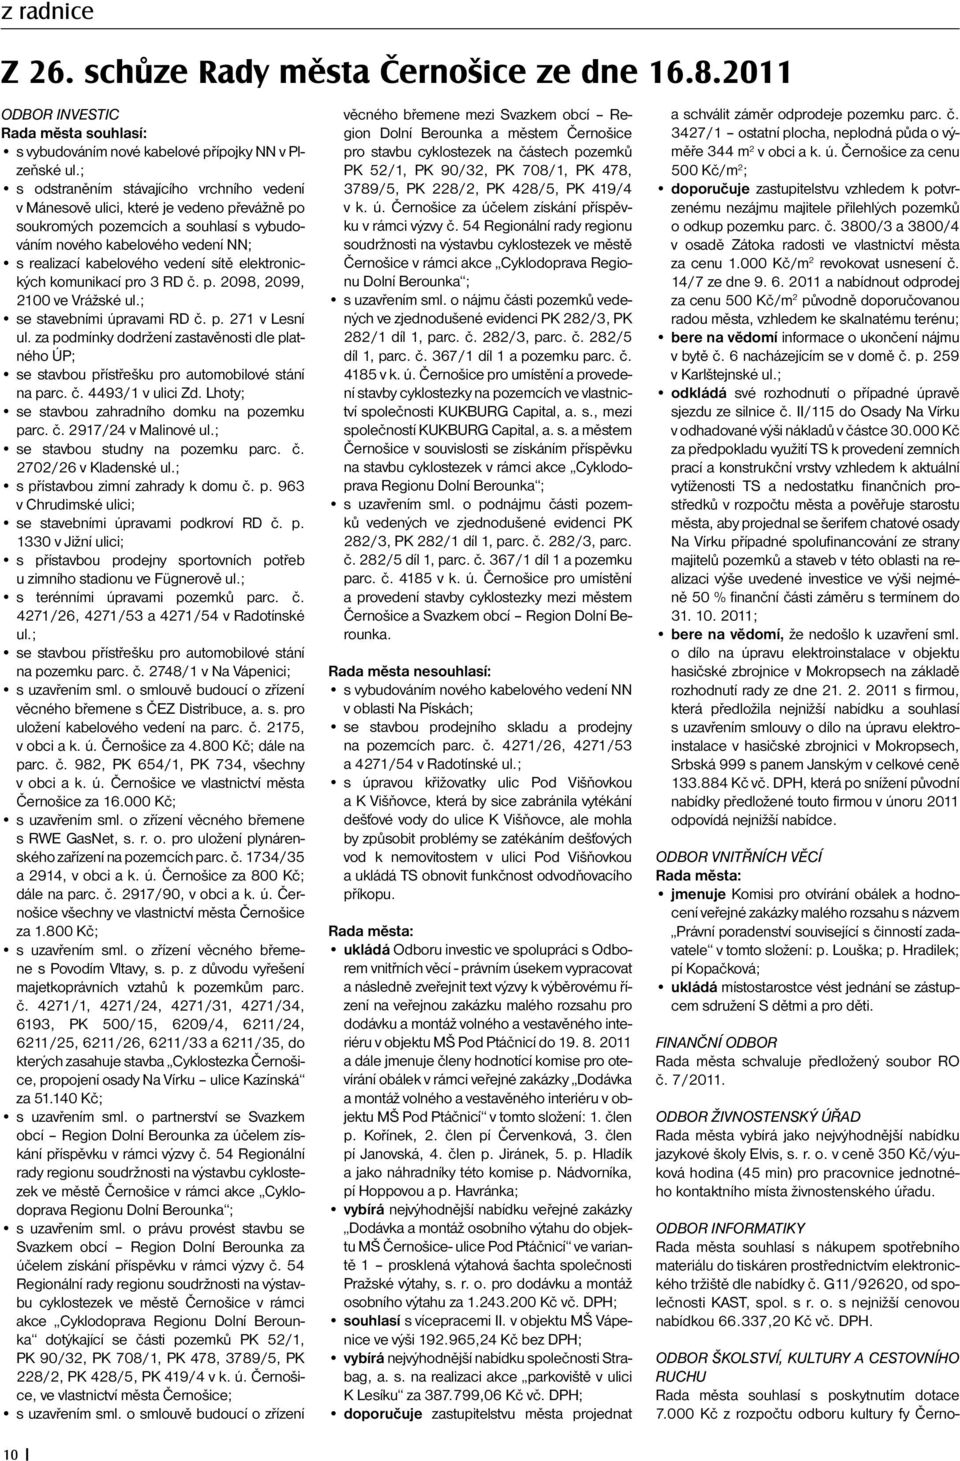 elektronických komunikací pro 3 RD č. p. 2098, 2099, 2100 ve Vrážské ul.; se stavebními úpravami RD č. p. 271 v Lesní ul.